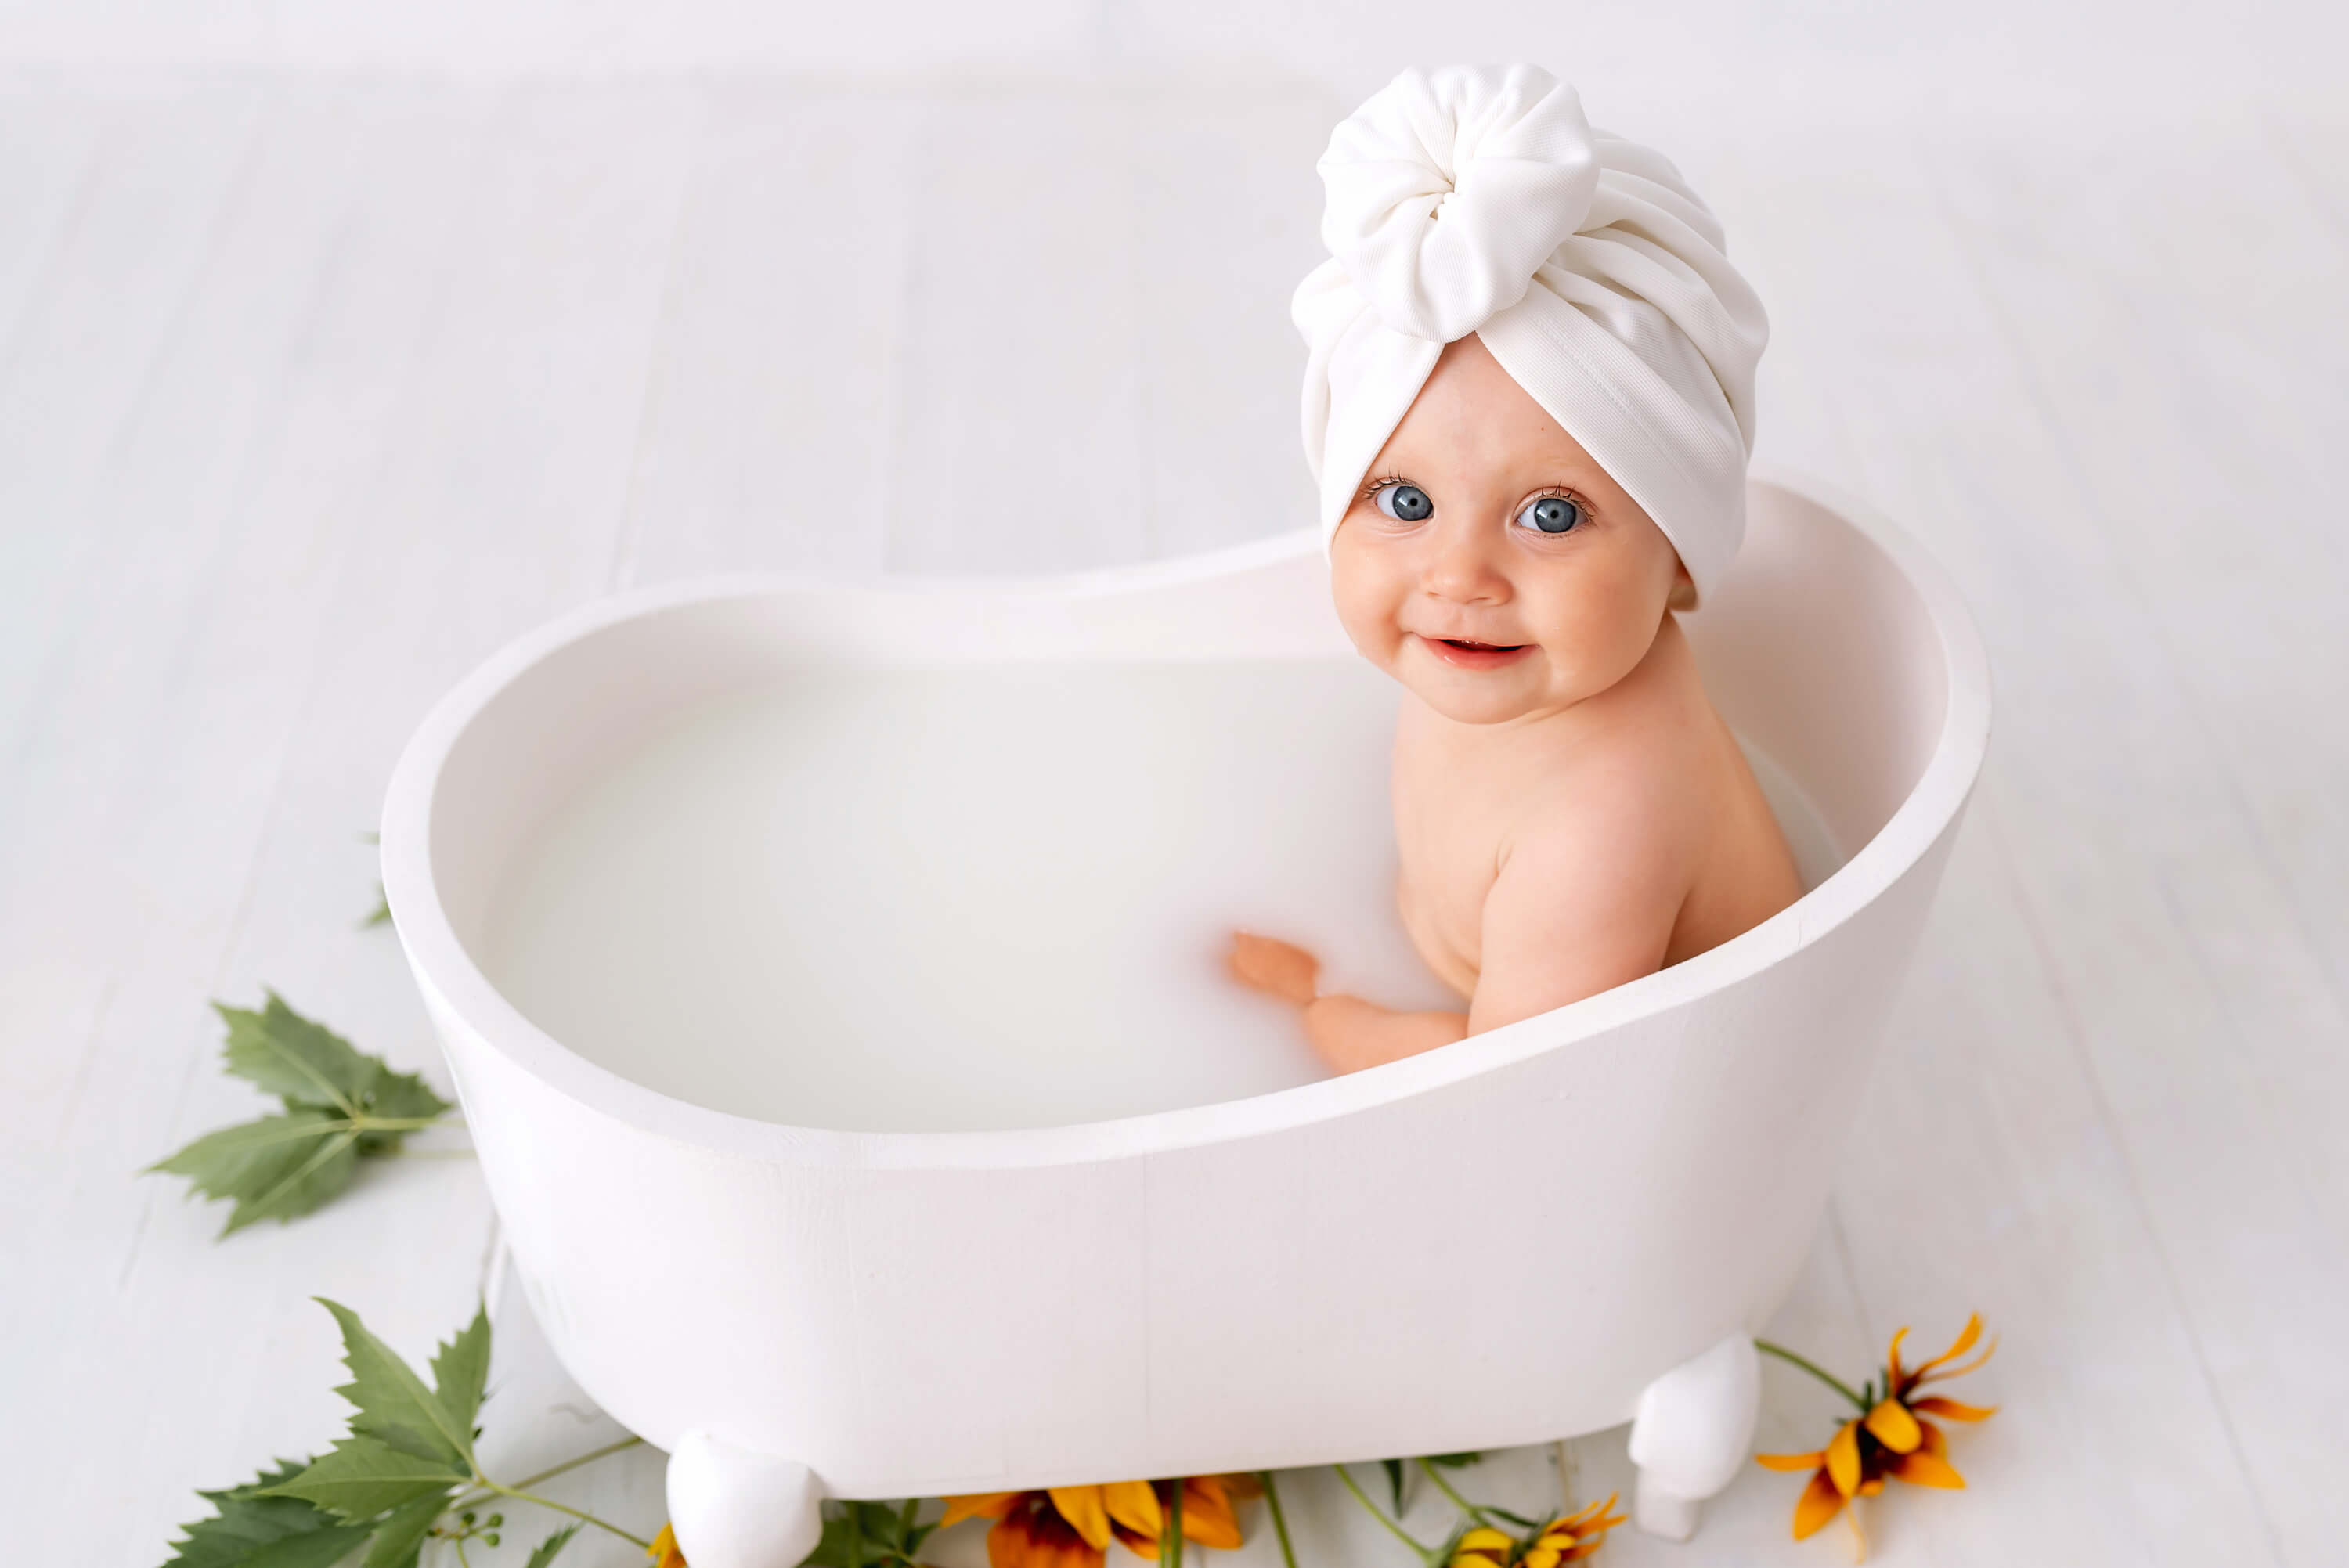 come lavare la testa al neonato durante il bagnetto